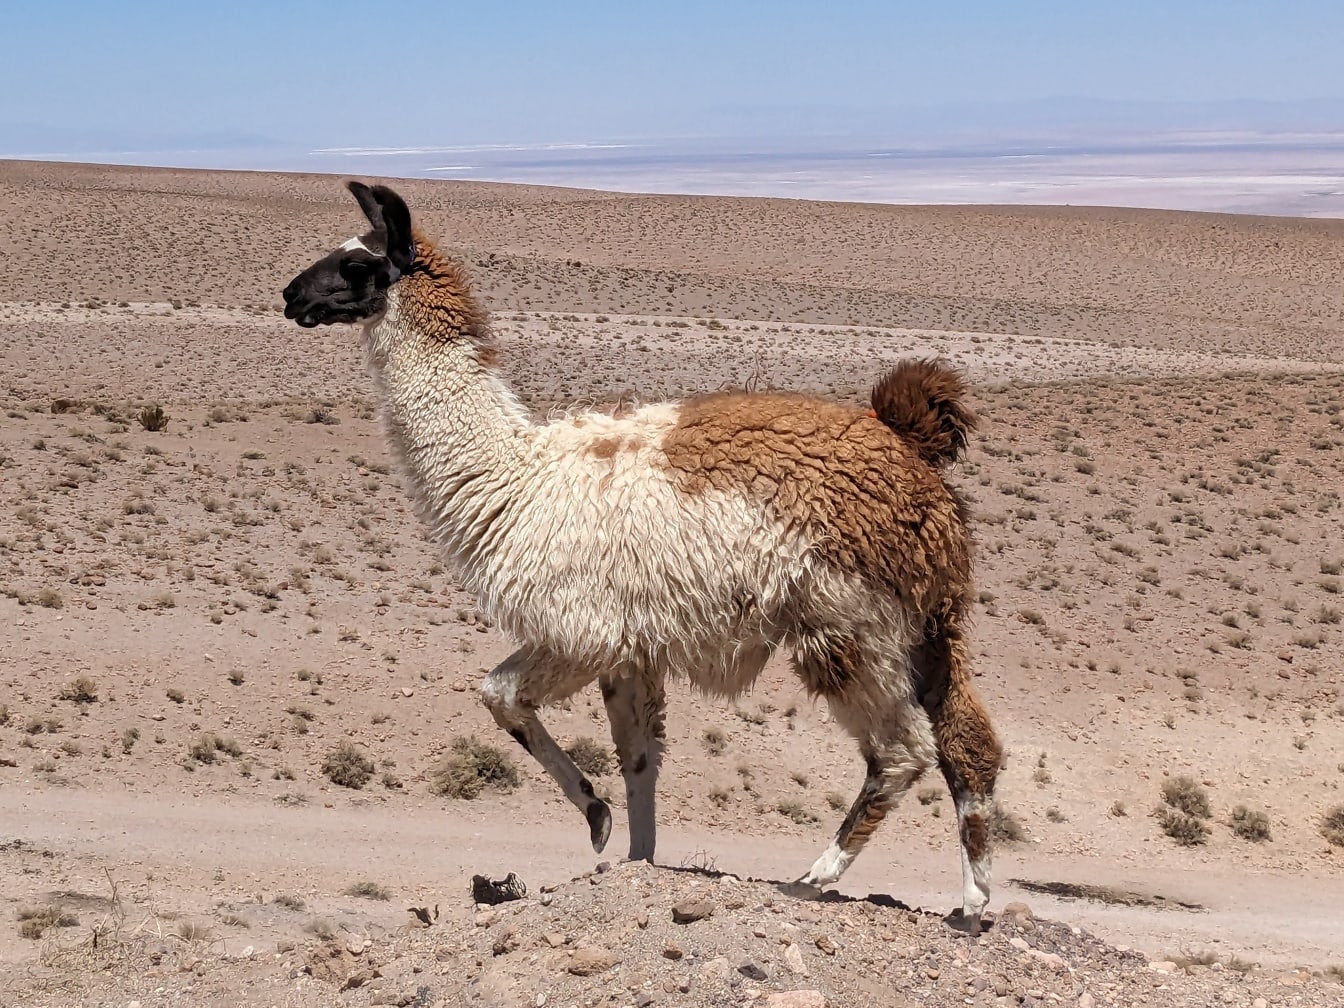 ลามะเปรูเดินบนเนินเขาในทะเลทรายที่ระดับความสูง (Lama glama)